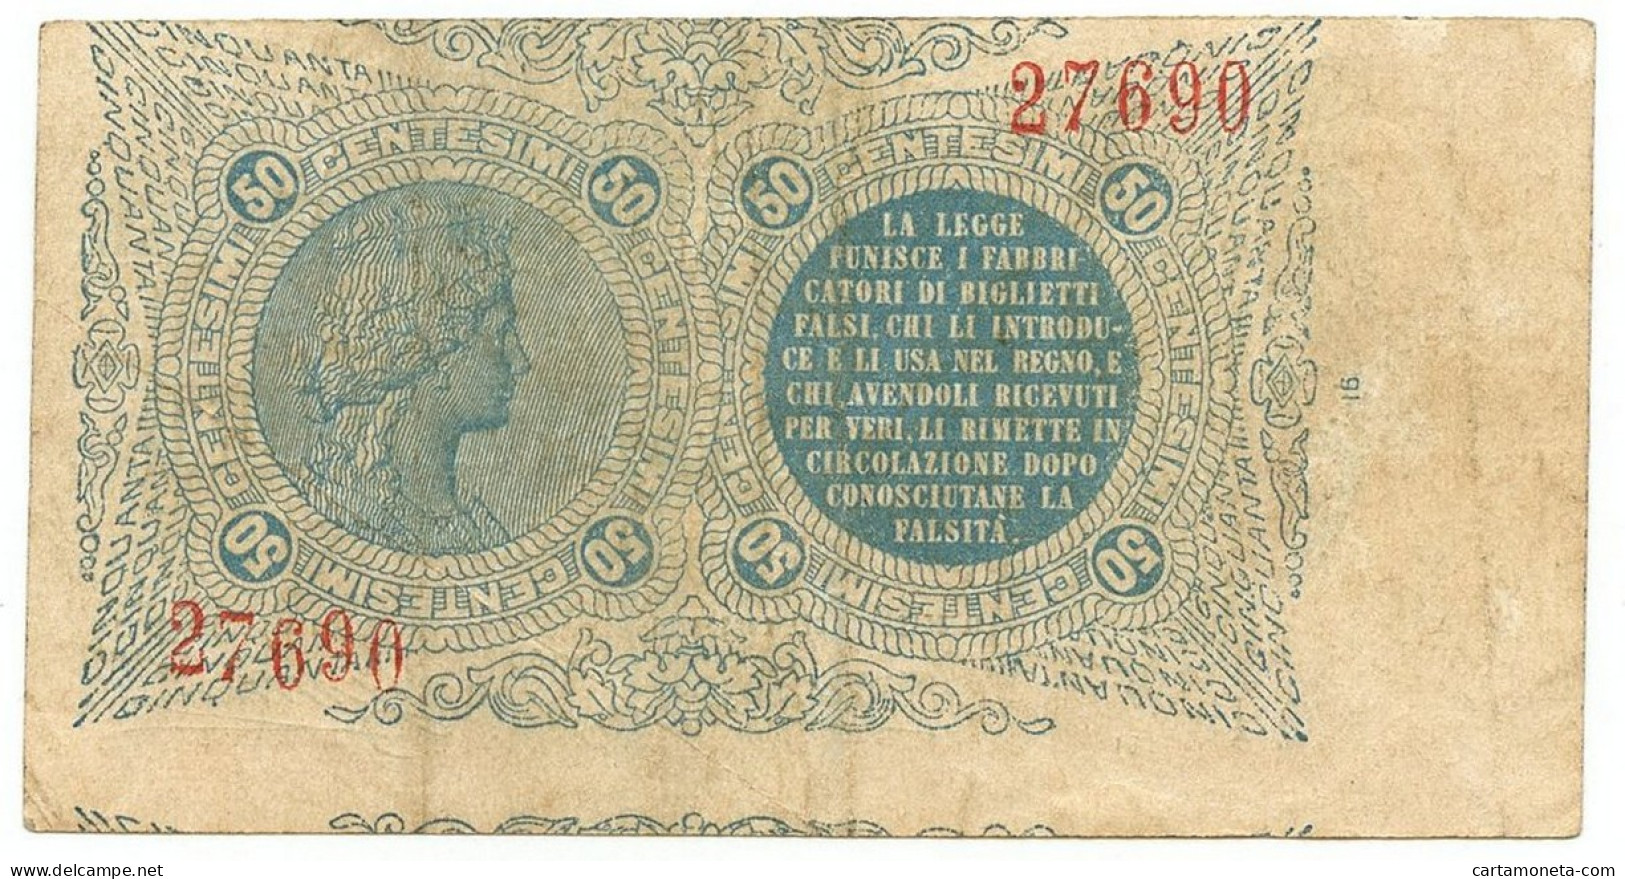 50 CENTESIMI BIGLIETTO CONSORZIALE REGNO D'ITALIA 30/04/1874 BB+ - Biglietto Consorziale